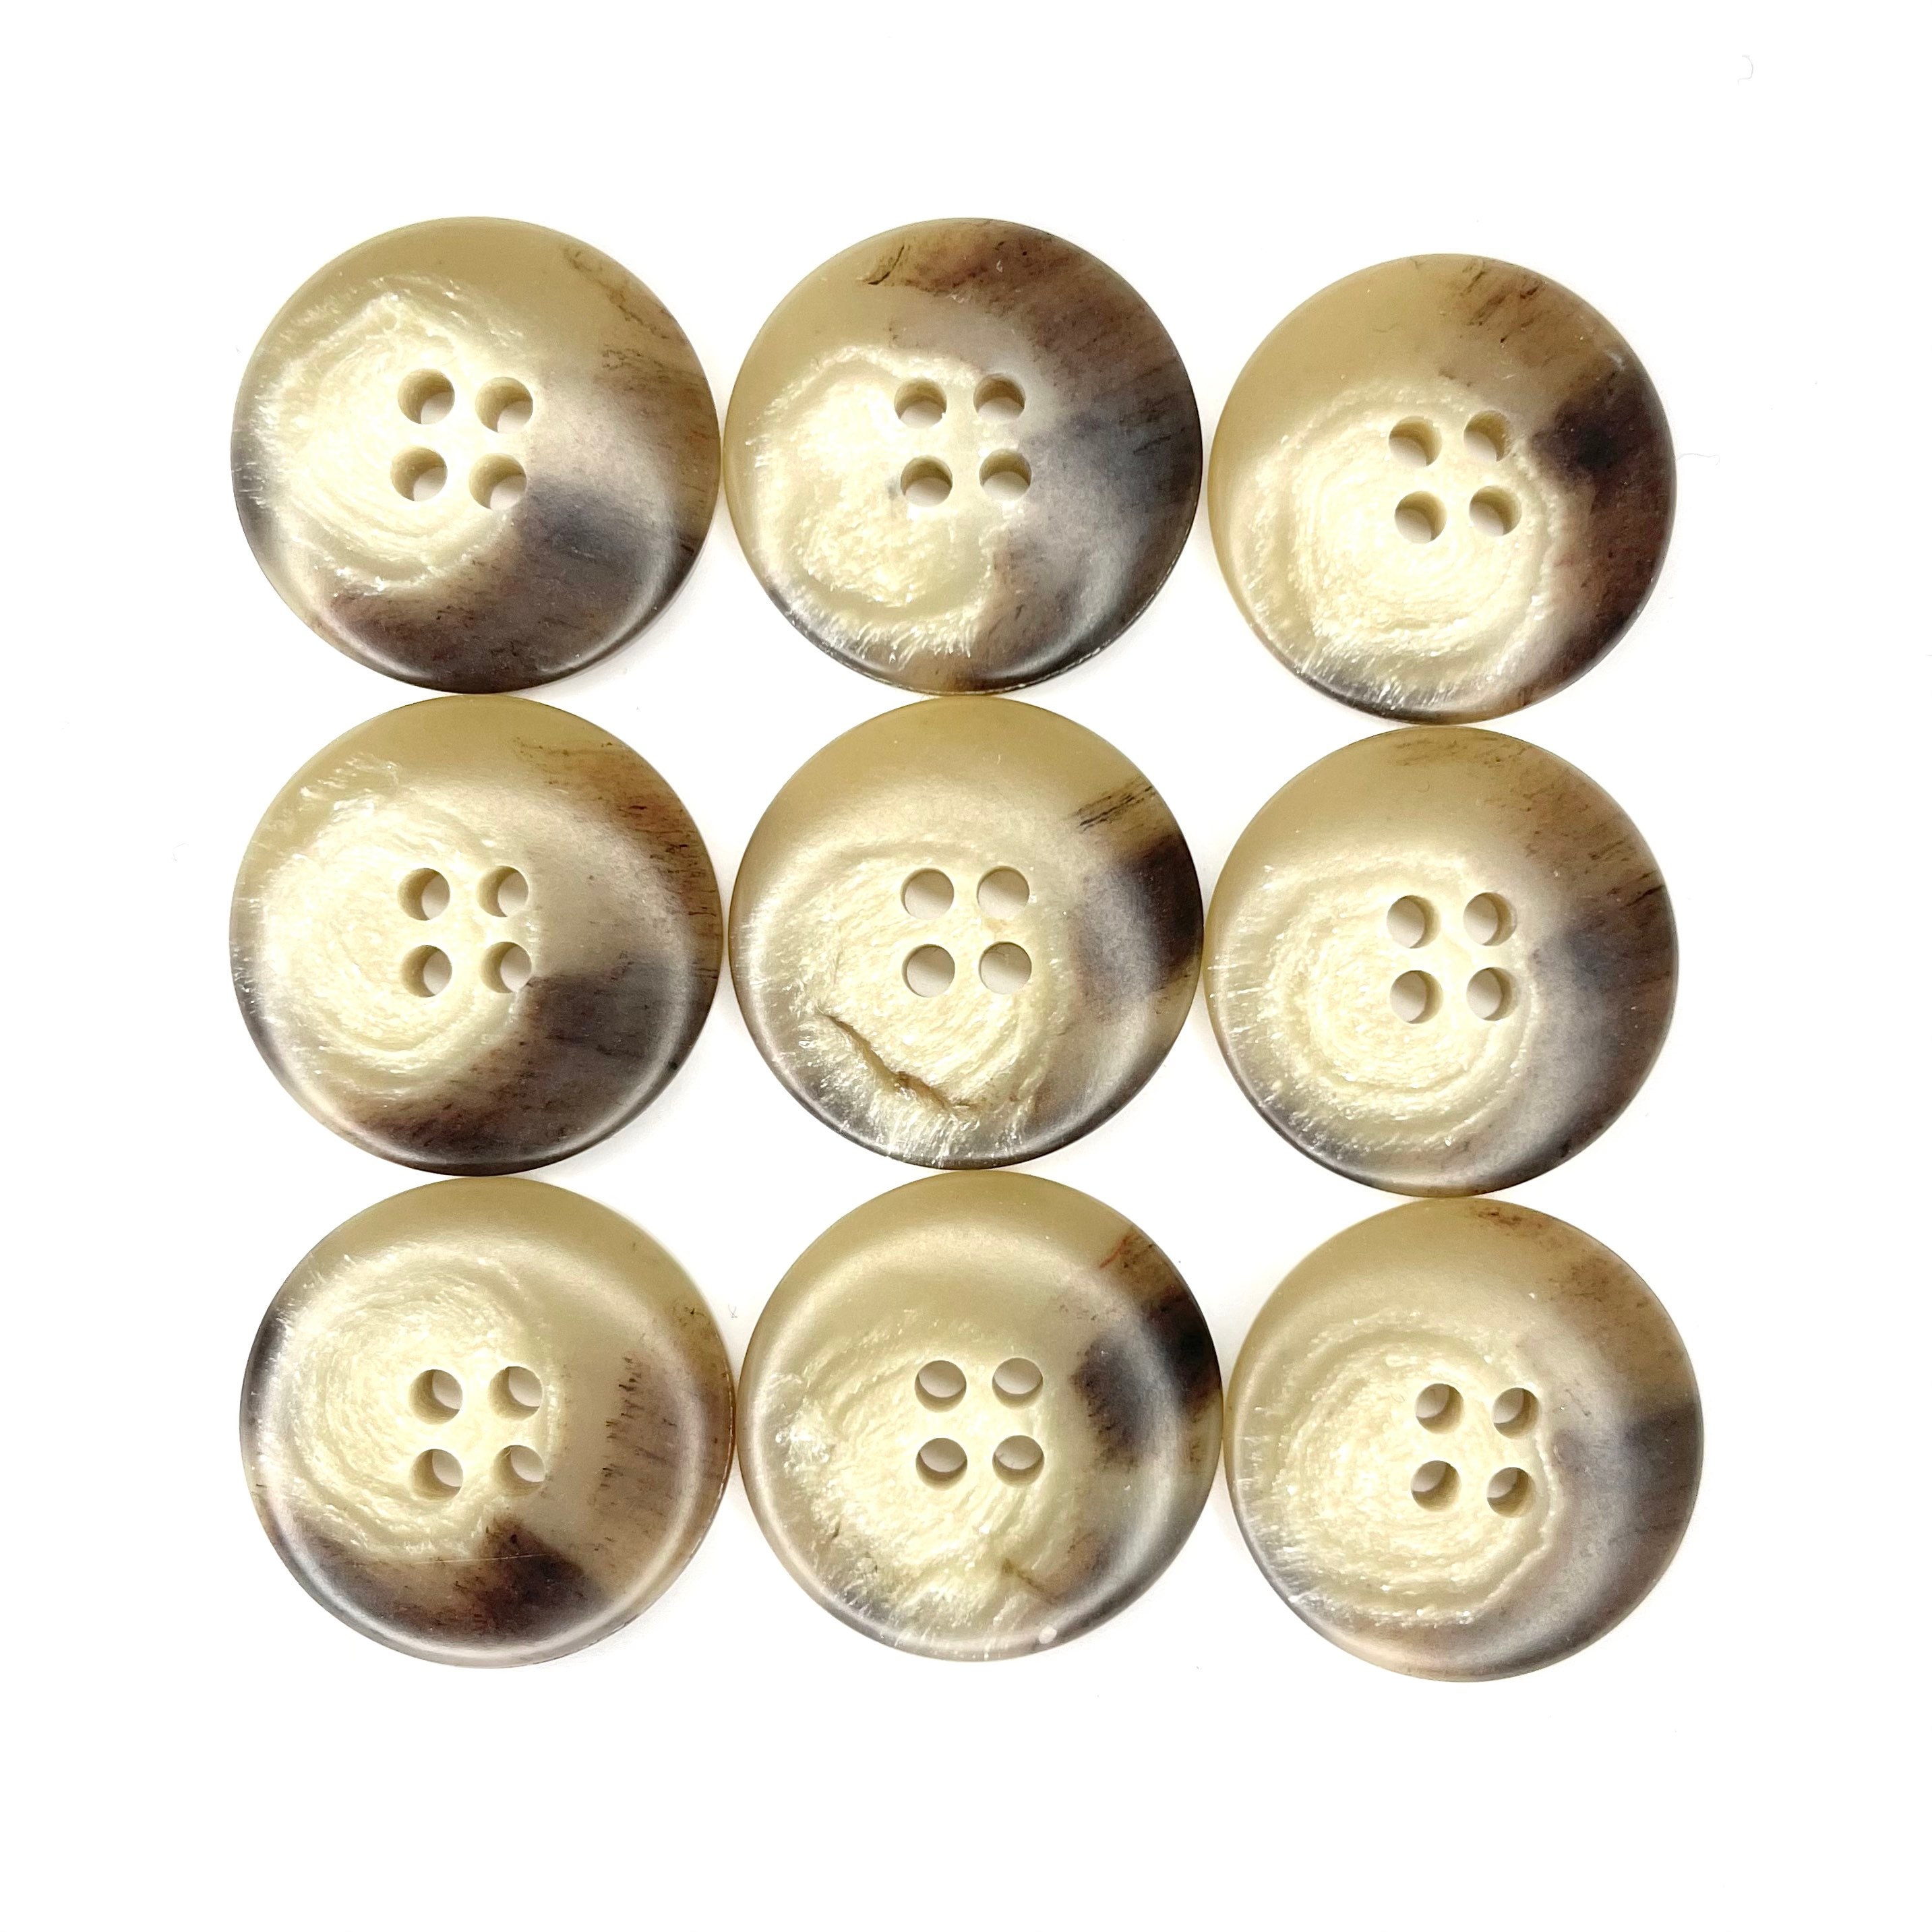 Sets of Mottled Beige & Light Brown Genuine Horn Suit Buttons